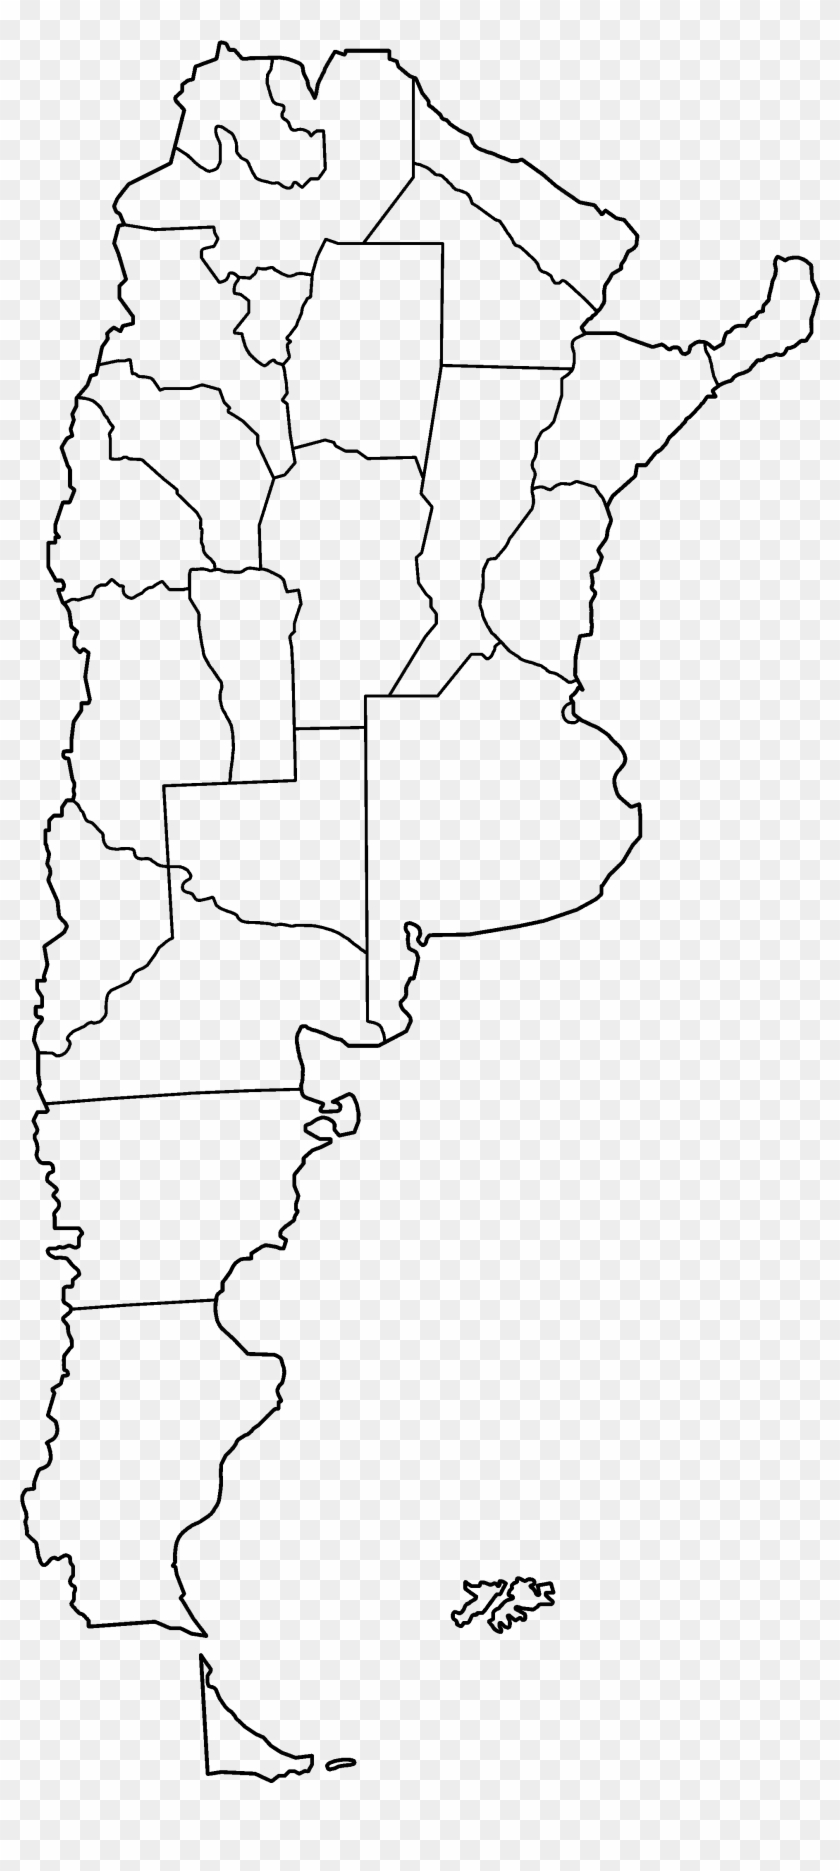 Argentina Provinces Blank Mapa De Argentina Vector Hd Png Download 2000x4280 540476 Pinpng 5920